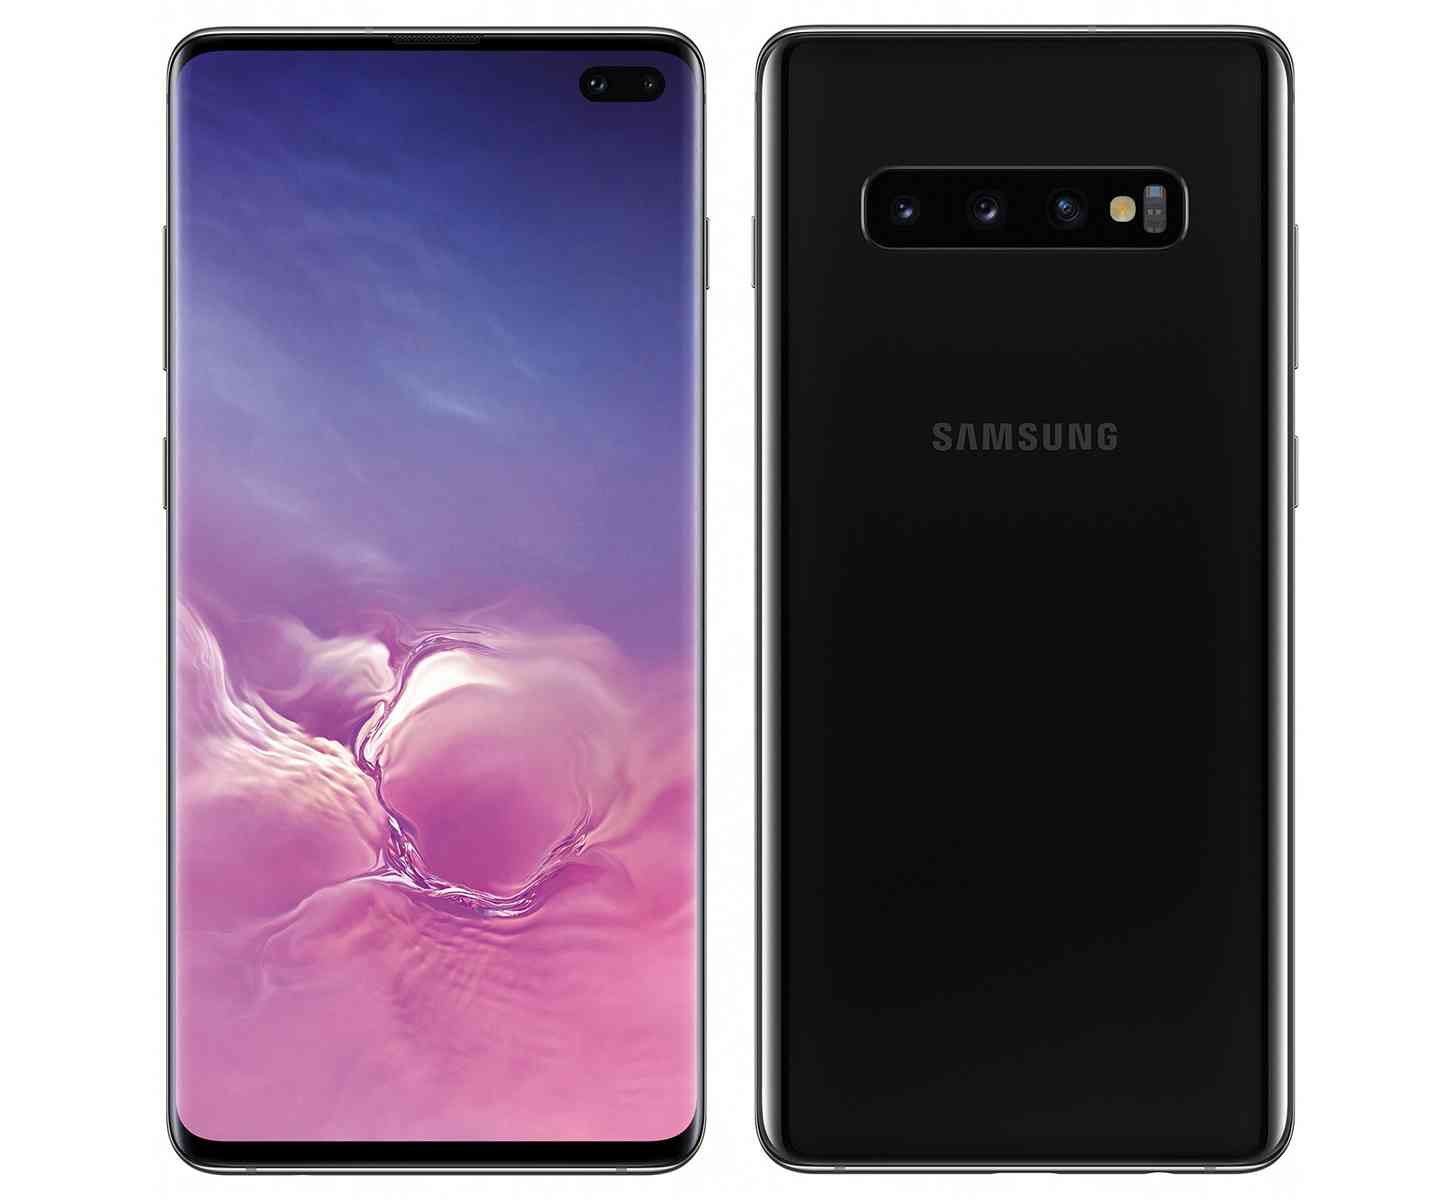 Samsung Galaxy S10+ render